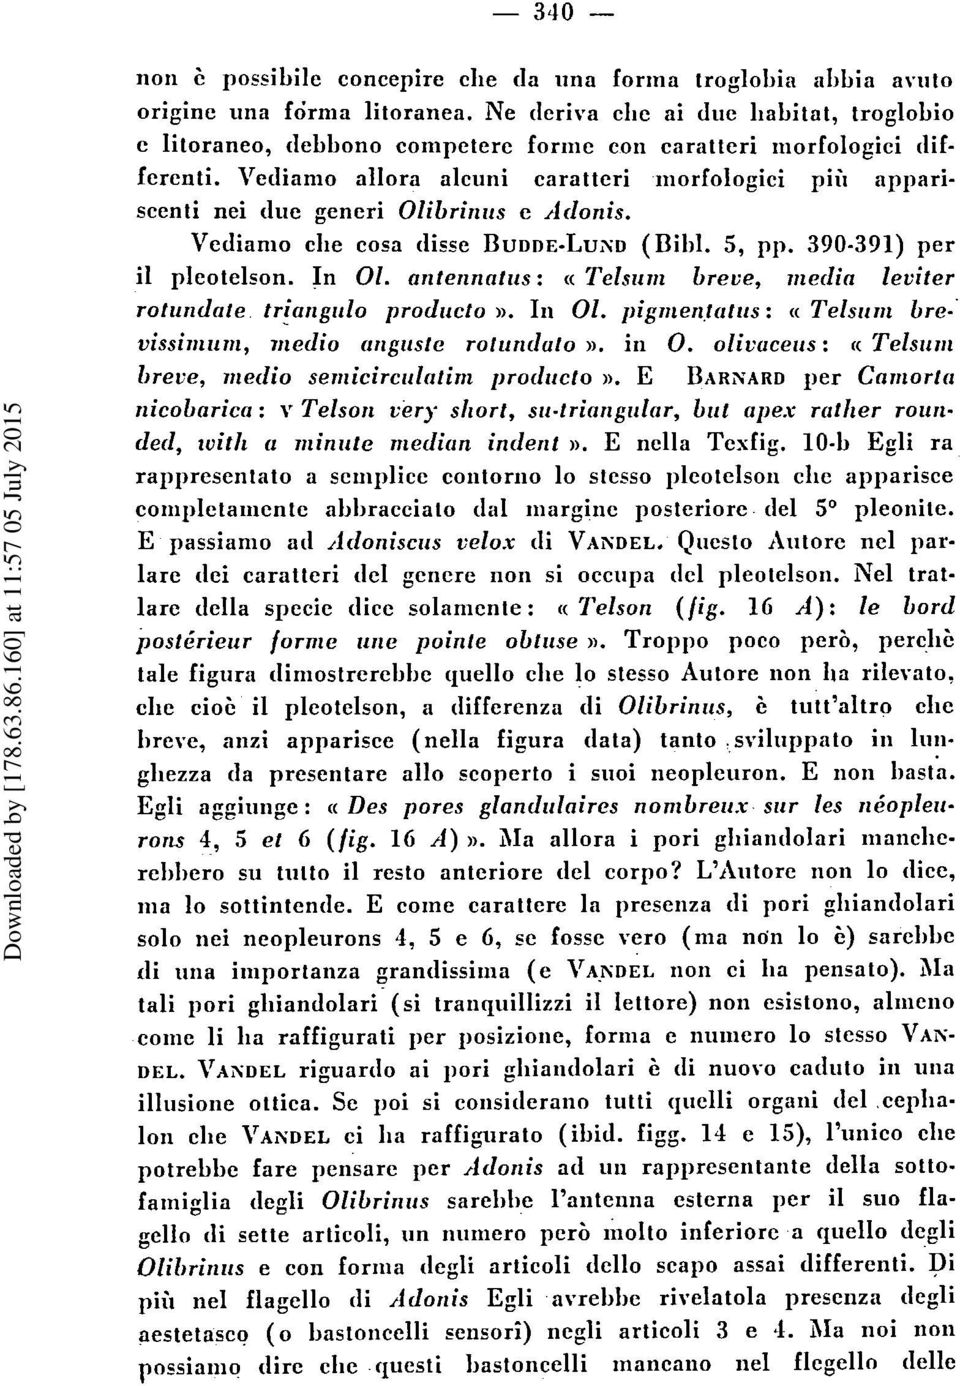 Vediamo allora alcuni carattcri niorfologici piii appariscenti nei due gencri Olibriniis e Adonis. Vedianio die cosa disse BUDDE-LUXD (Bild. 5, pp. 390-391) per il plcotelson. In 01.